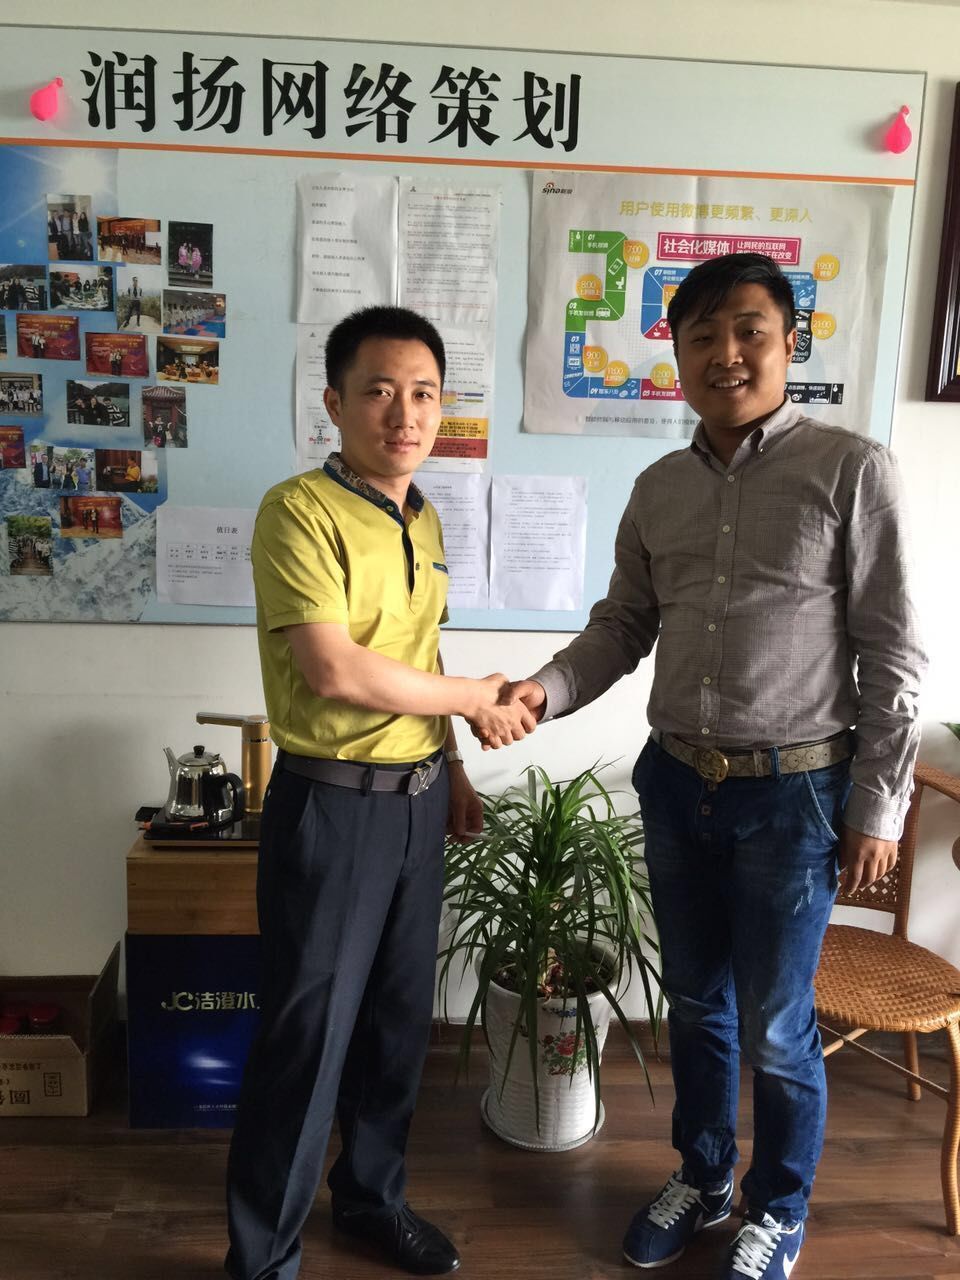 江苏天滋律师事务所来访泰州润扬并签合作项目(图3)